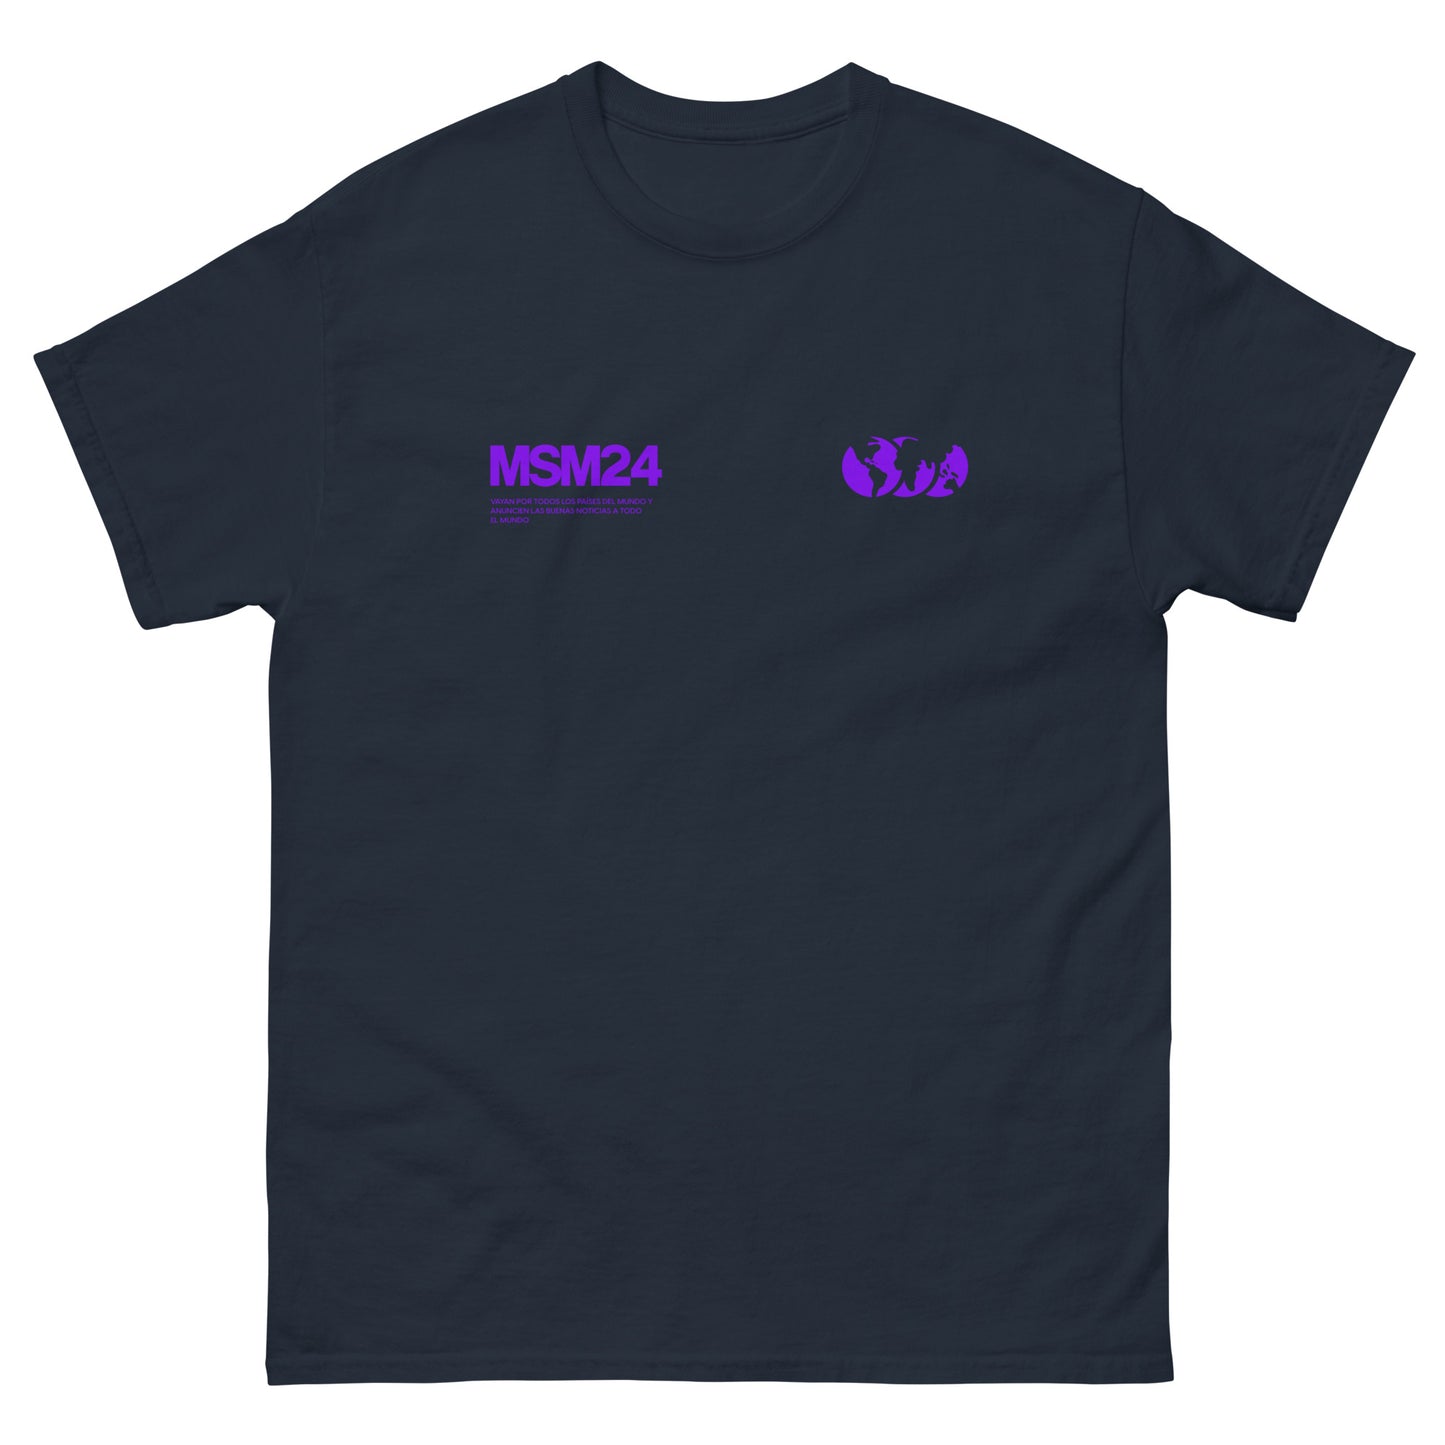 BUENAS NOTICIAS (Morado) - Camiseta manga corta Miel San Marcos